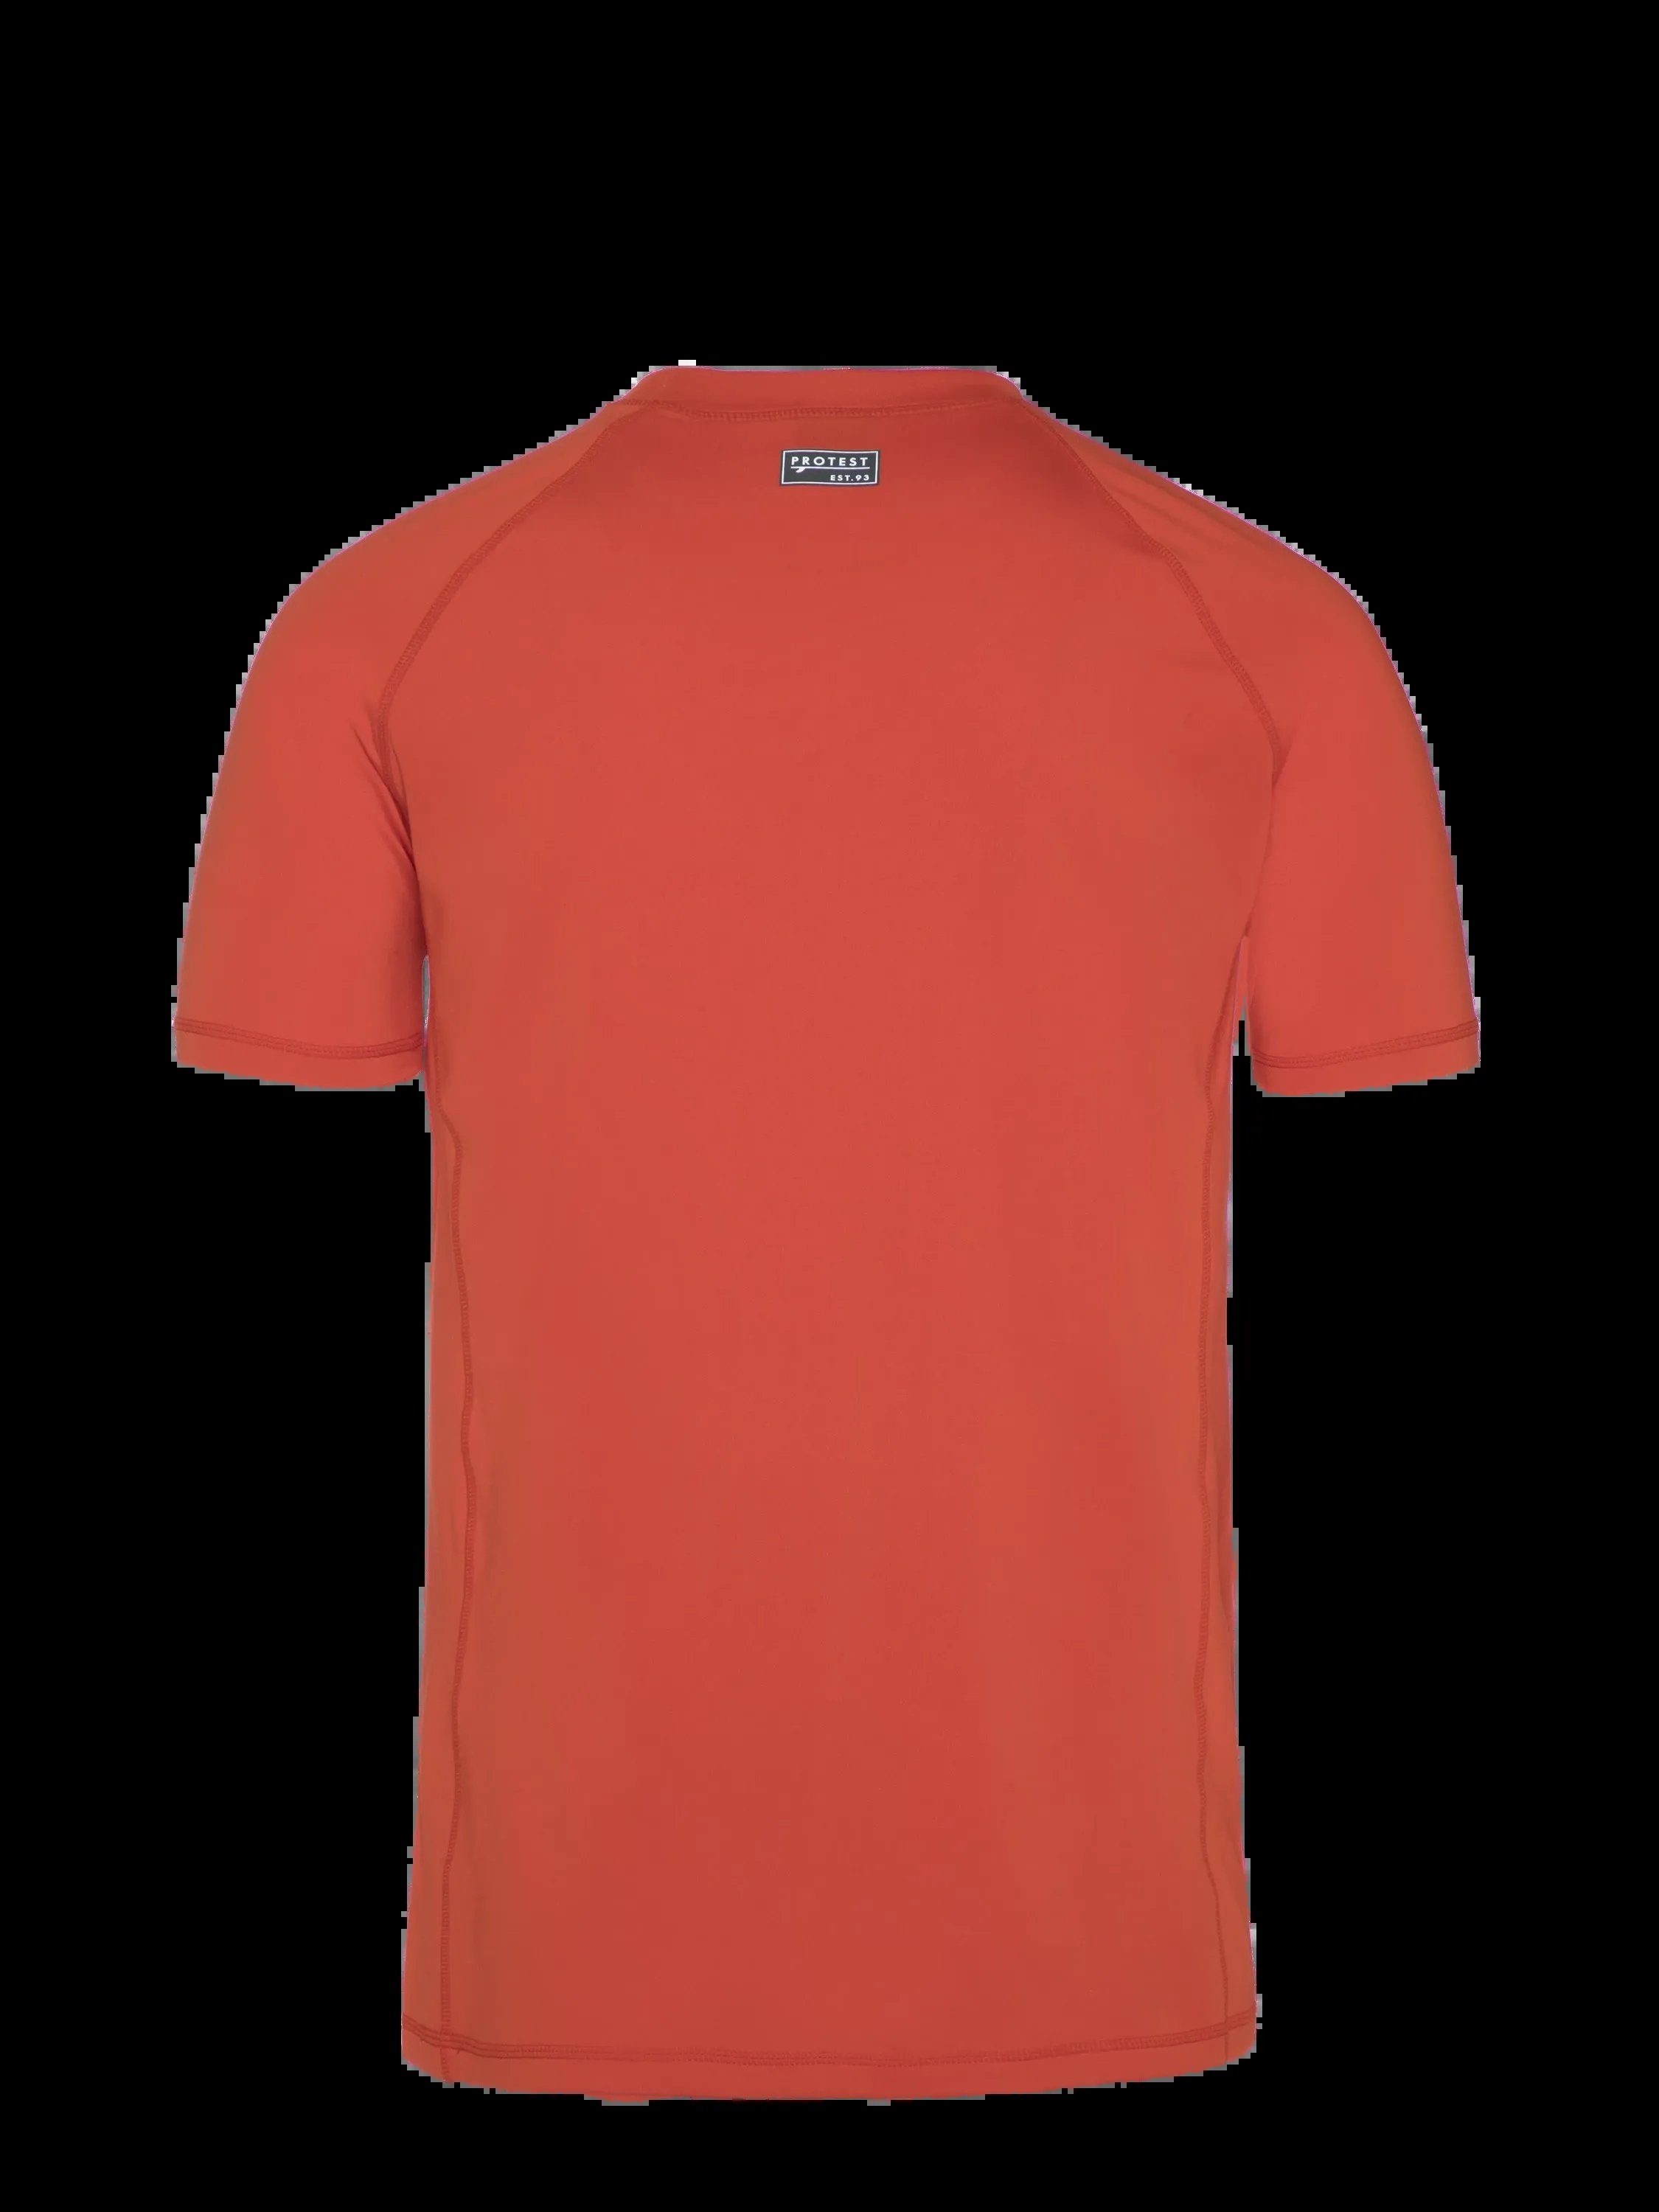 rashguard T-Shirt Tomato sleeve PRTCATER short Protest